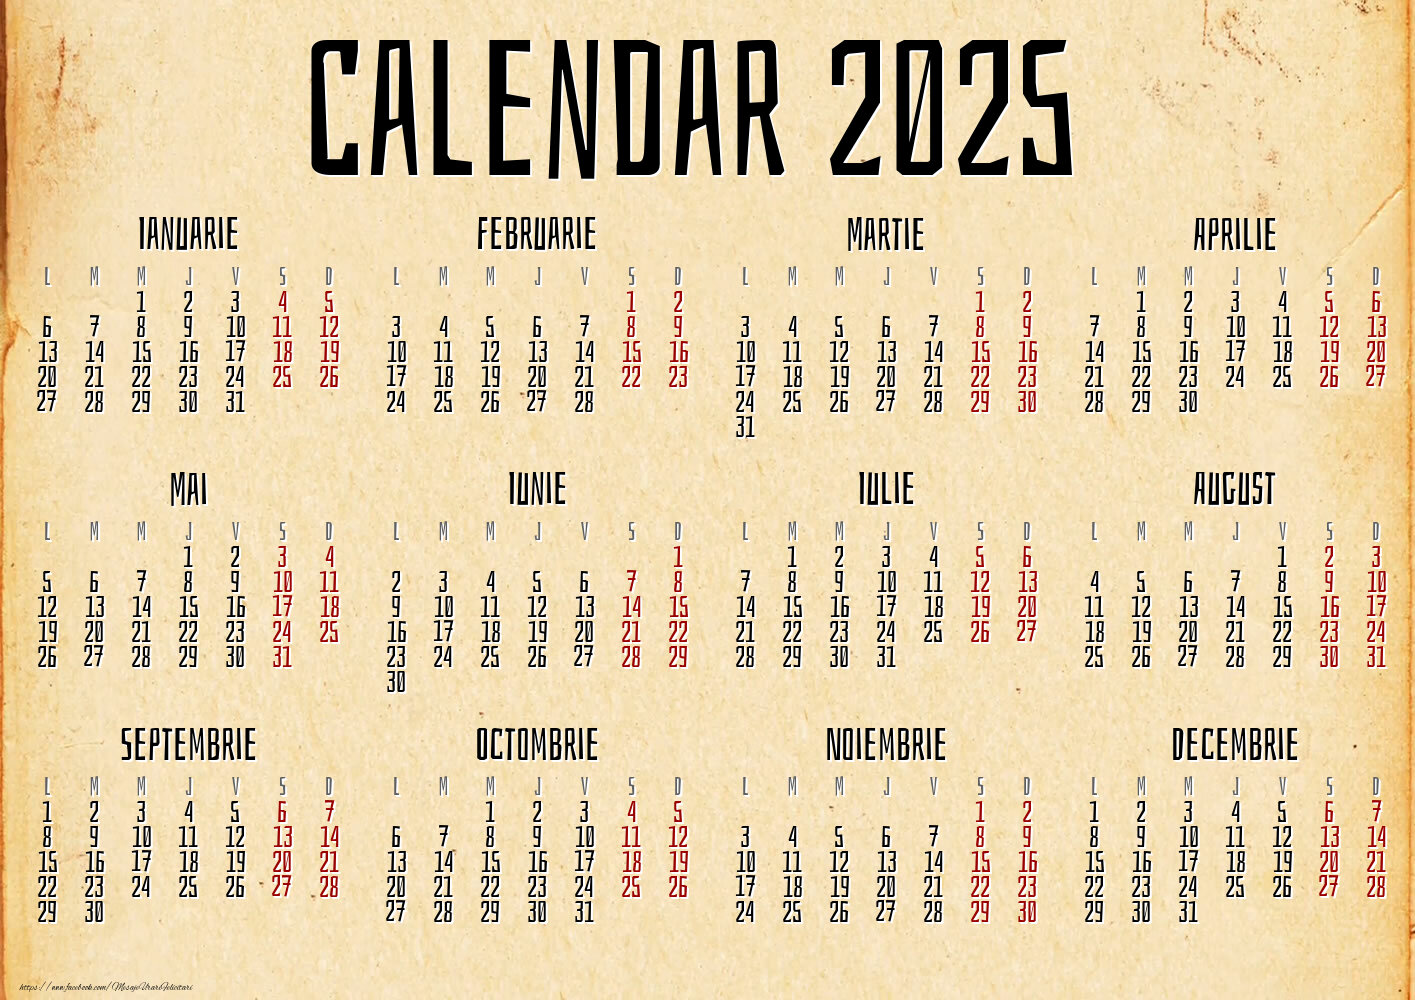 Calendar 2025 - Vintage Paper - Model 0048